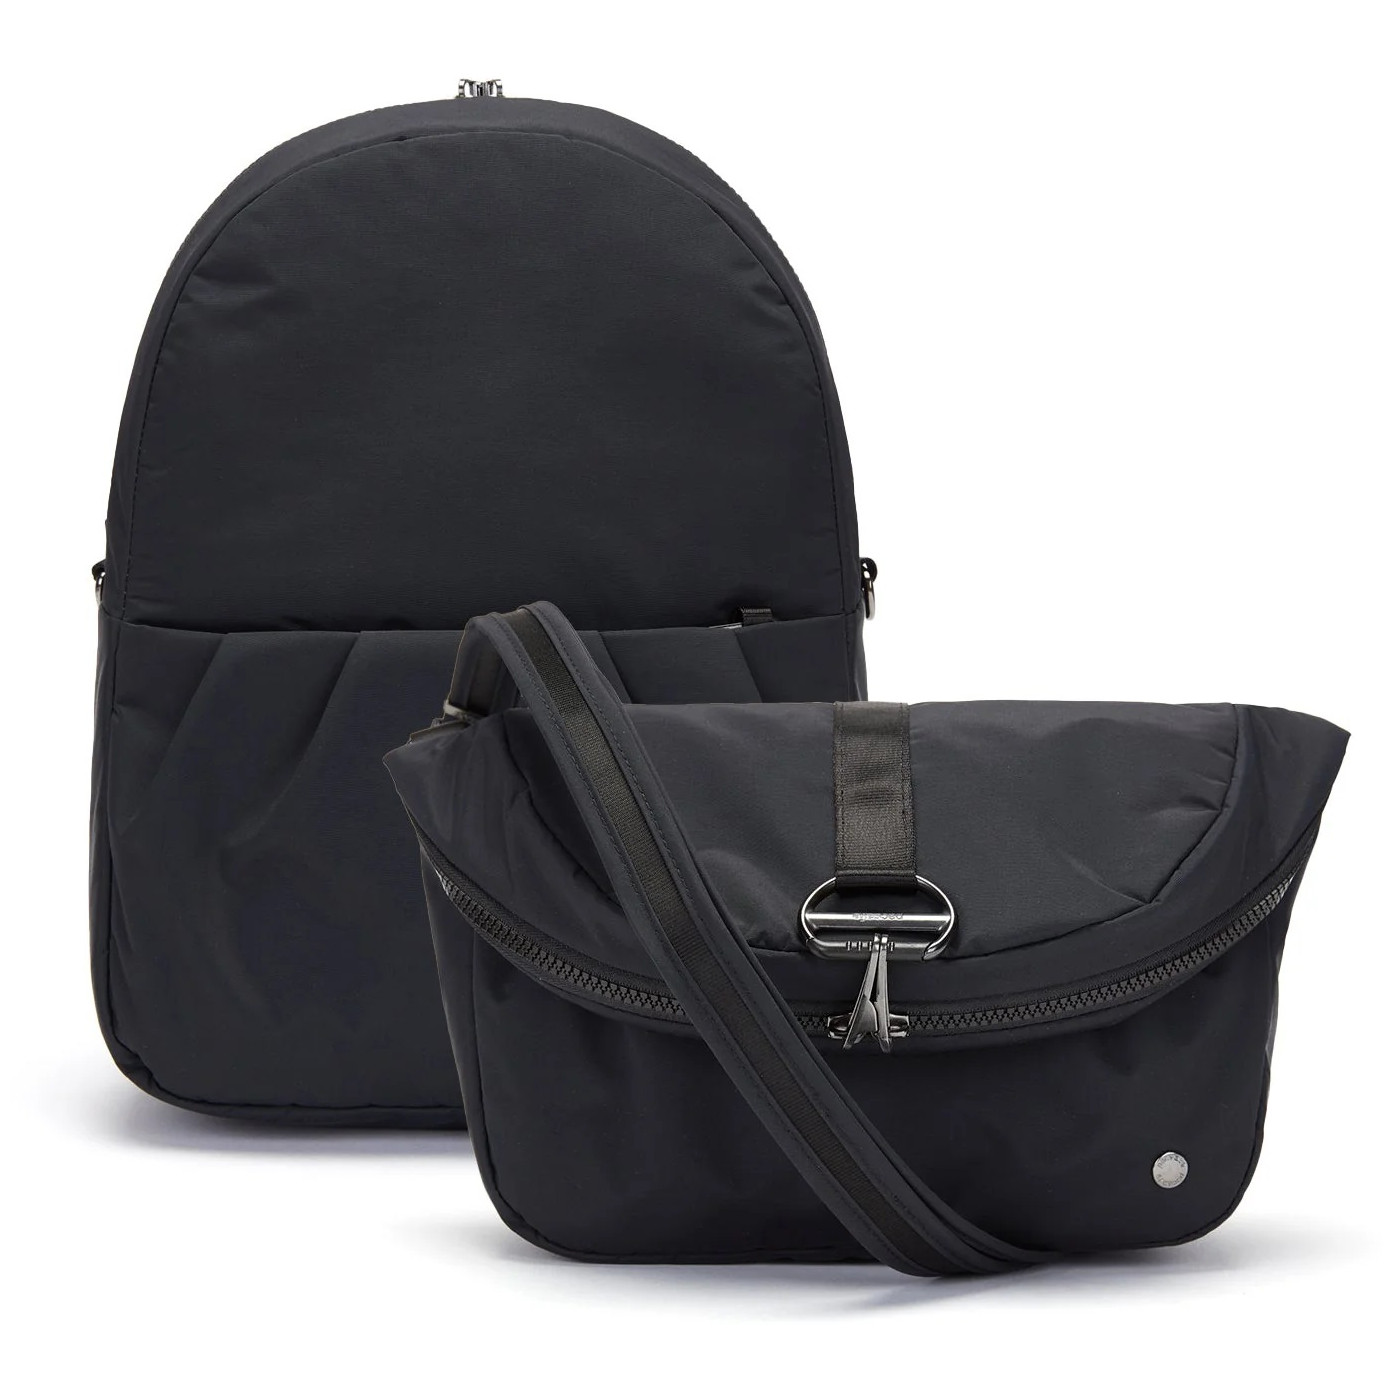 Městský batoh Pacsafe Citysafe CX convertible backpack Barva: černá